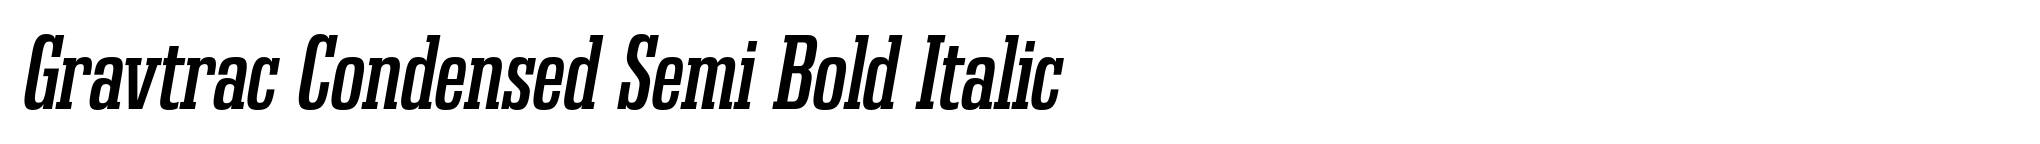 Gravtrac Condensed Semi Bold Italic image